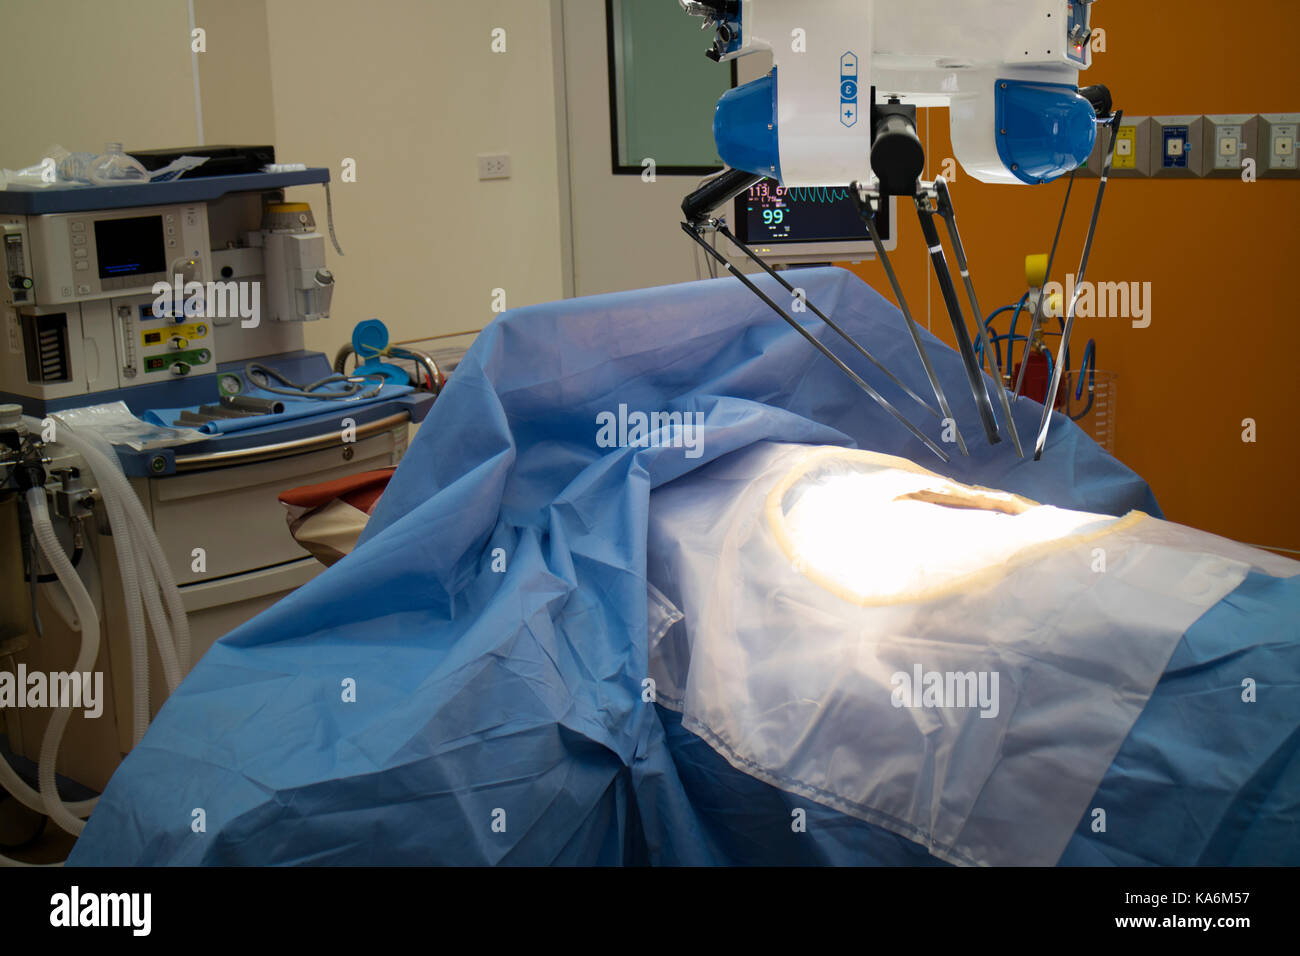 Erweiterte Roboterchirurgie Maschine am Krankenhaus, einige der wichtigsten Vorteile der Roboterchirurgie sind Präzision und Miniaturisierung, kleinere Schnitte, weniger Stockfoto